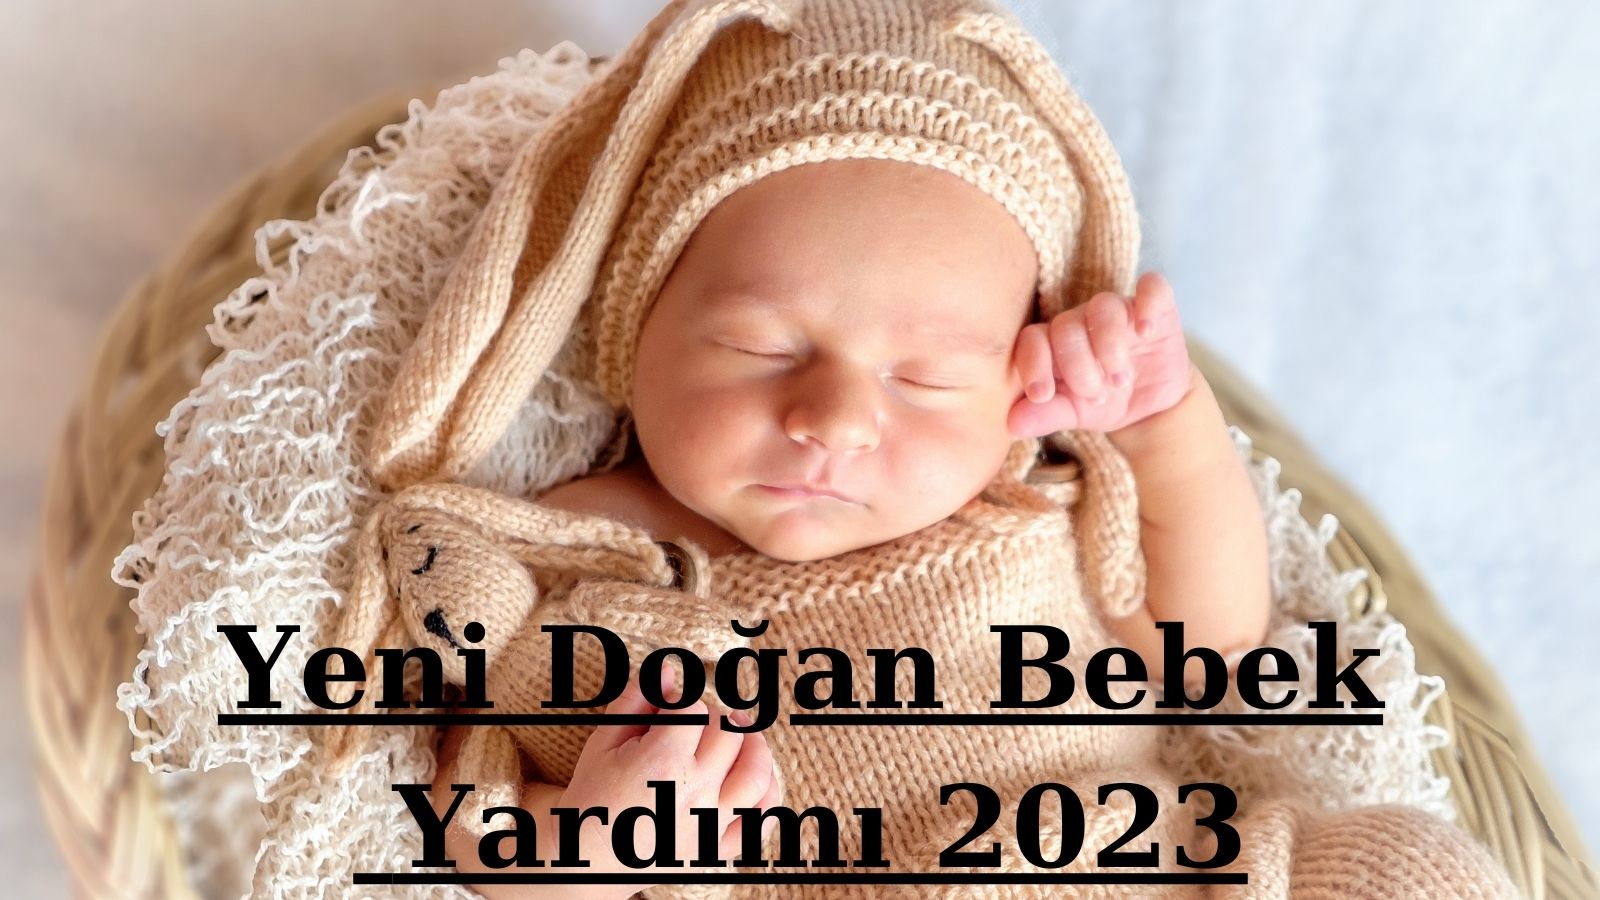 Yeni Doğan Bebek Yardımı 2023